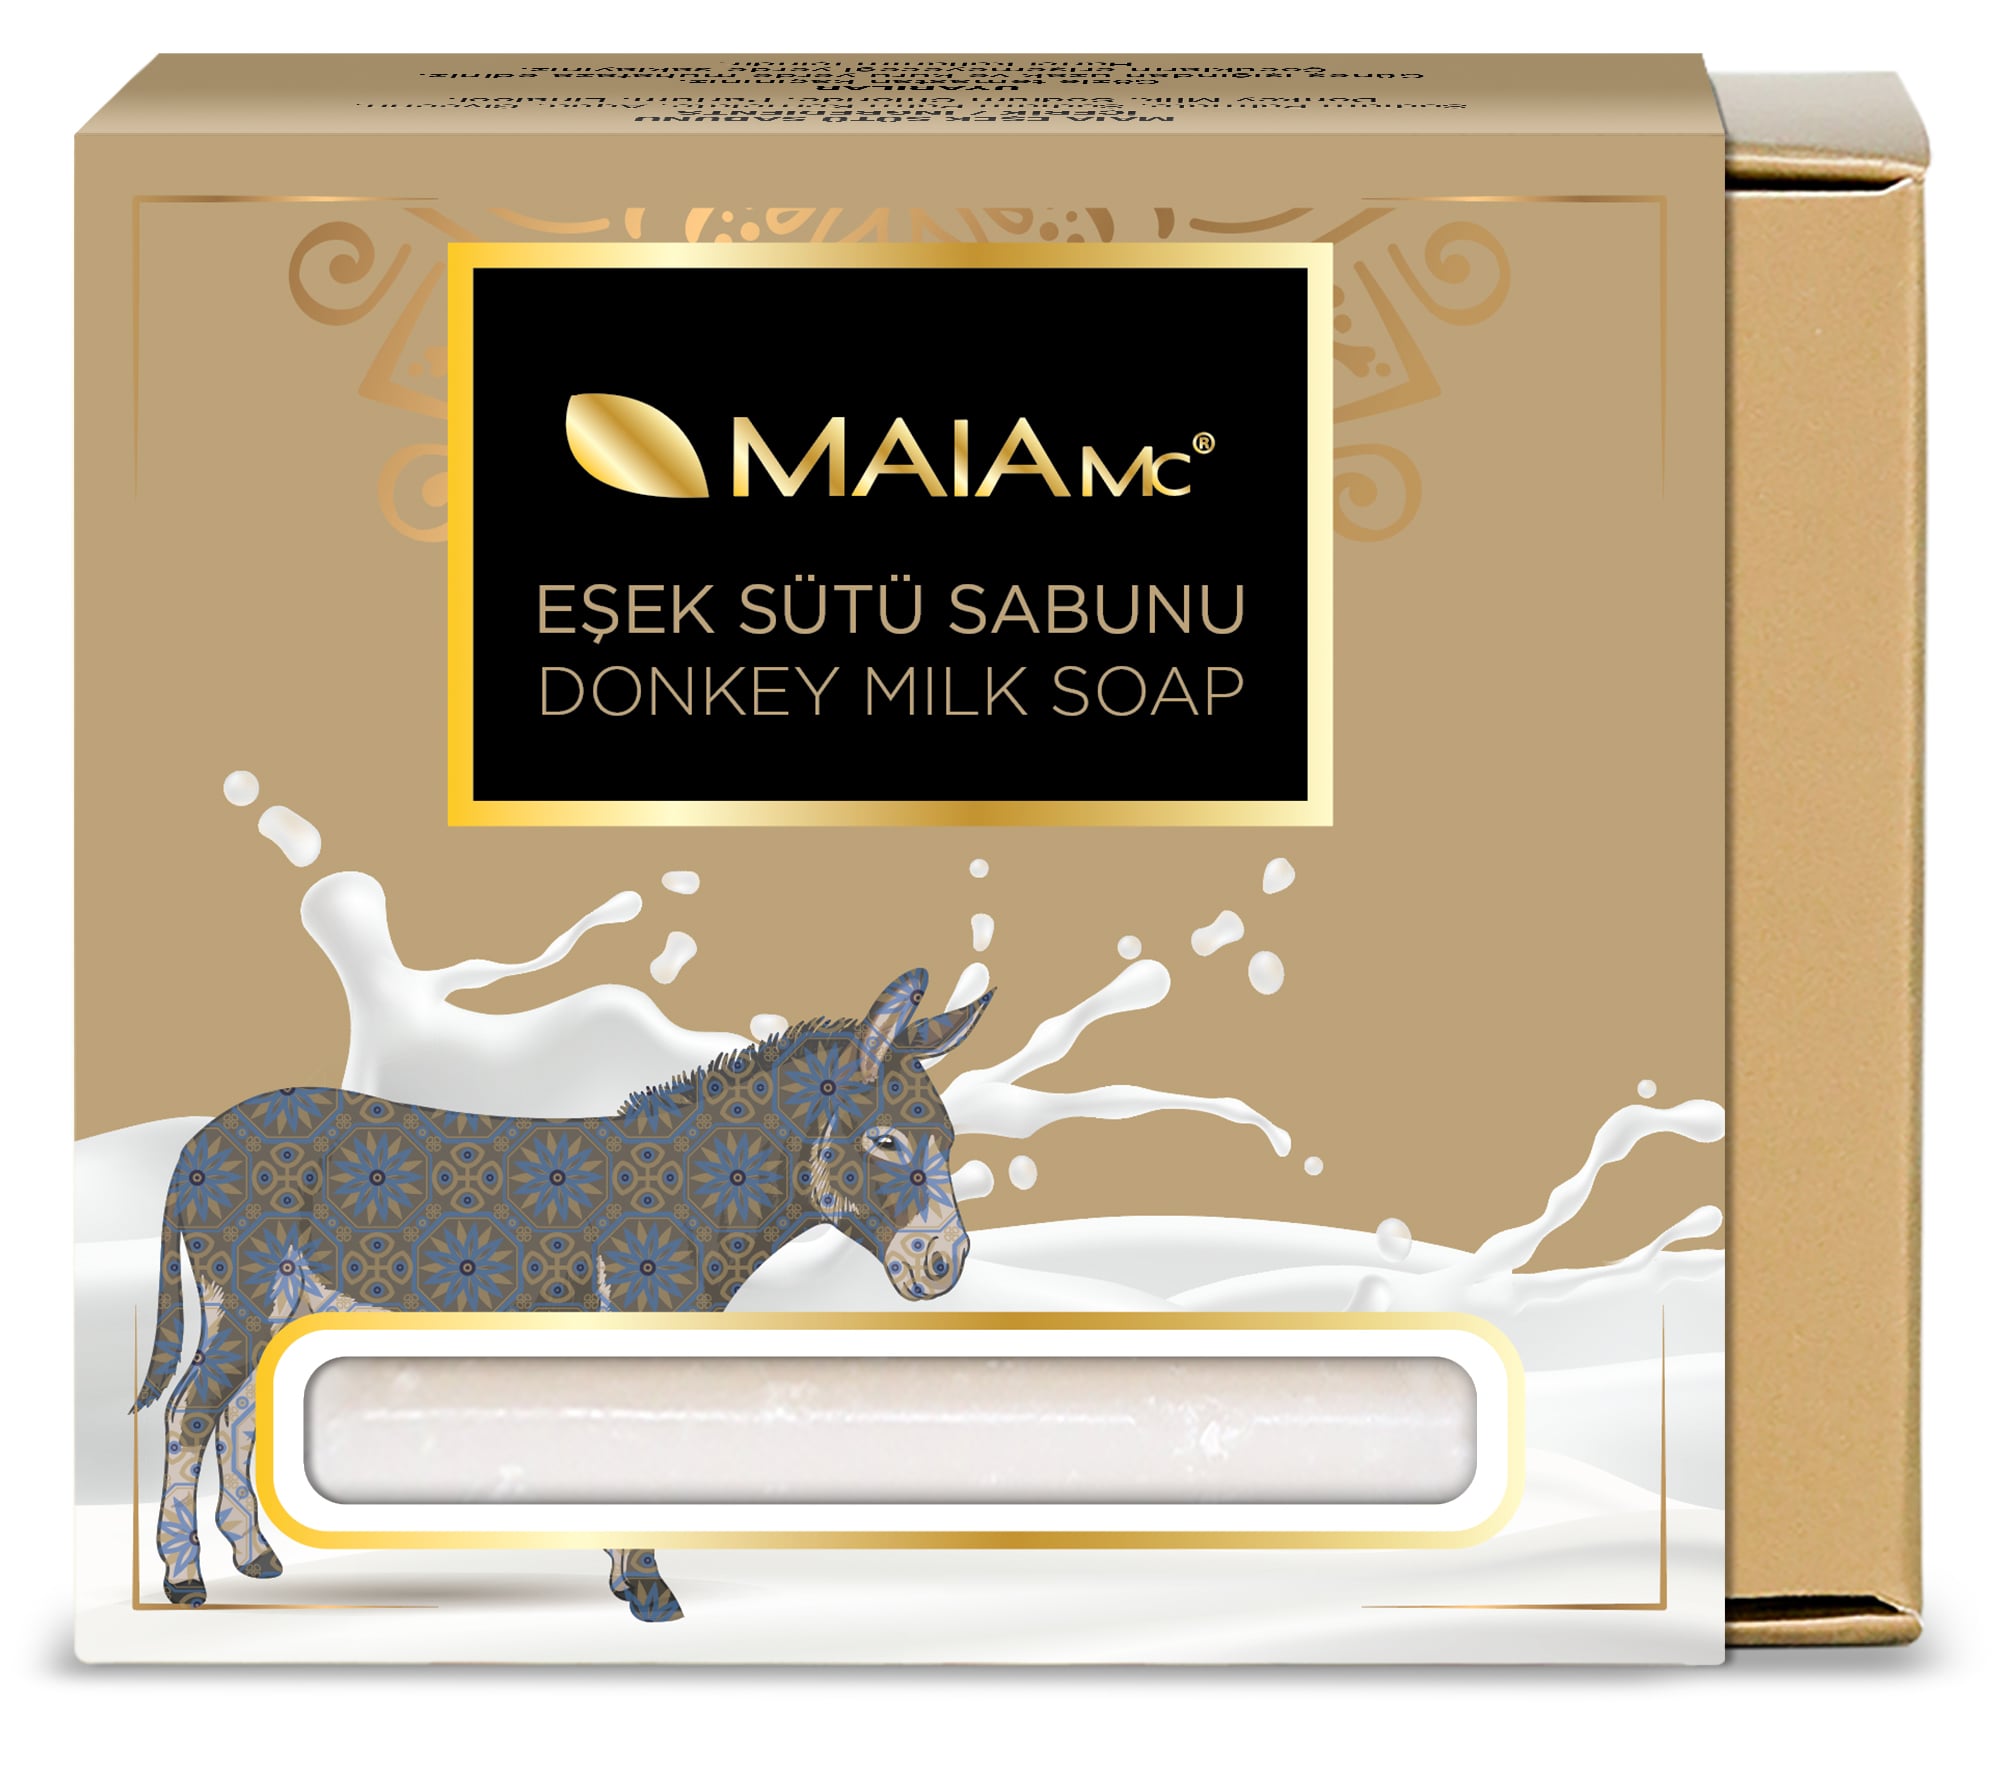 Турецкое натуральное мыло Maia Mc из ослиного молока турецкое натуральное мыло maia mc из ослиного молока